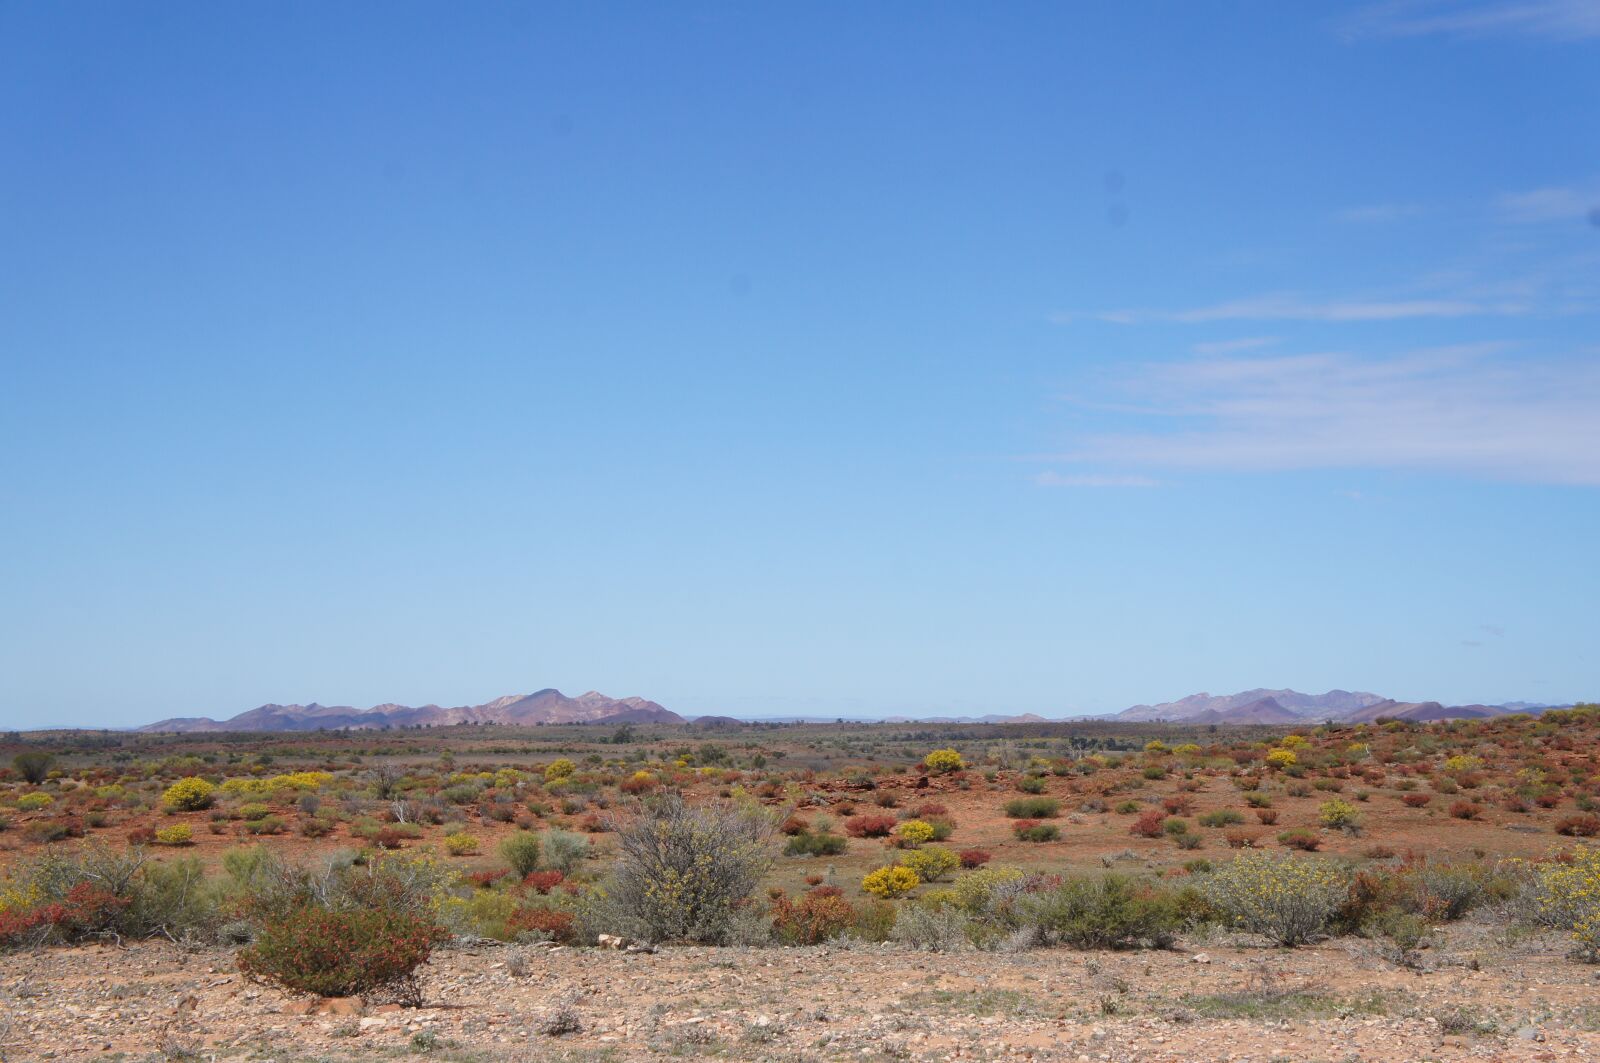 Sony Alpha NEX-C3 + Sony E 18-55mm F3.5-5.6 OSS sample photo. Australian desert, outback australia photography